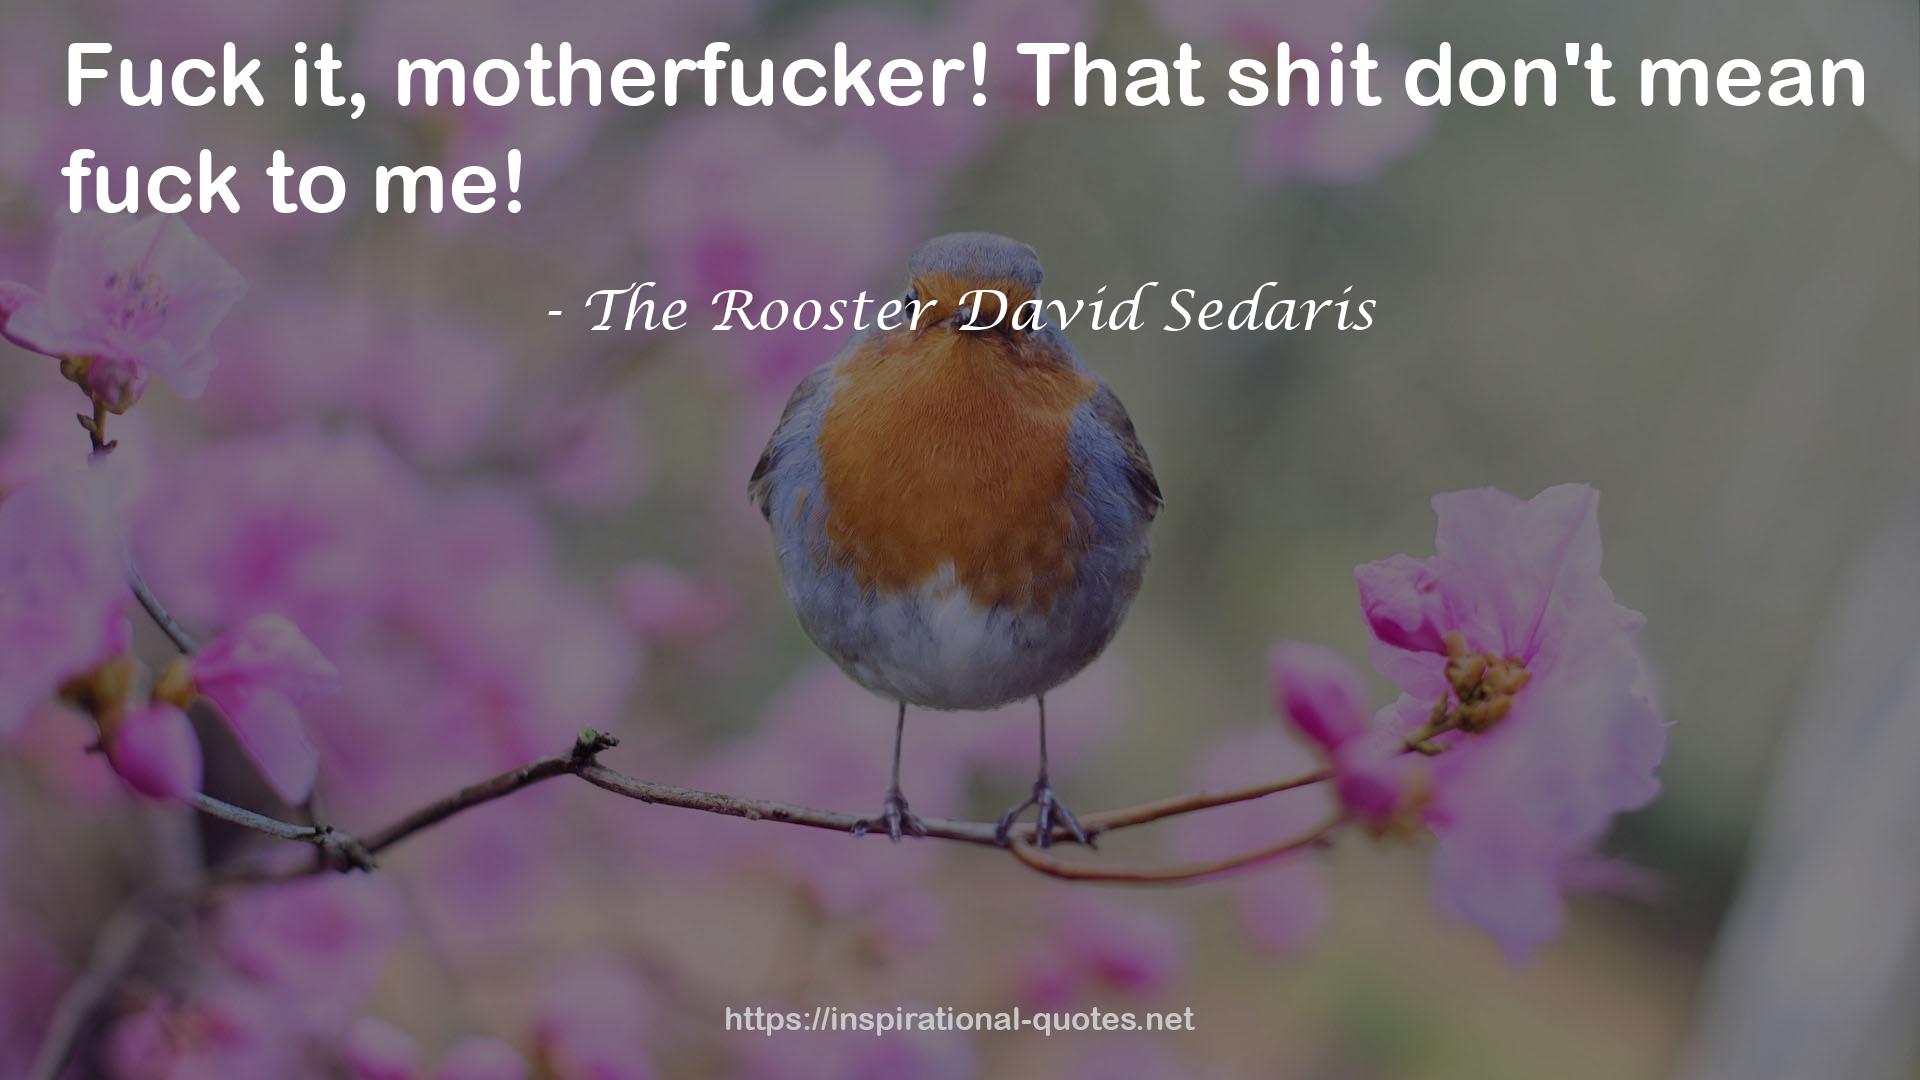 The Rooster David Sedaris QUOTES